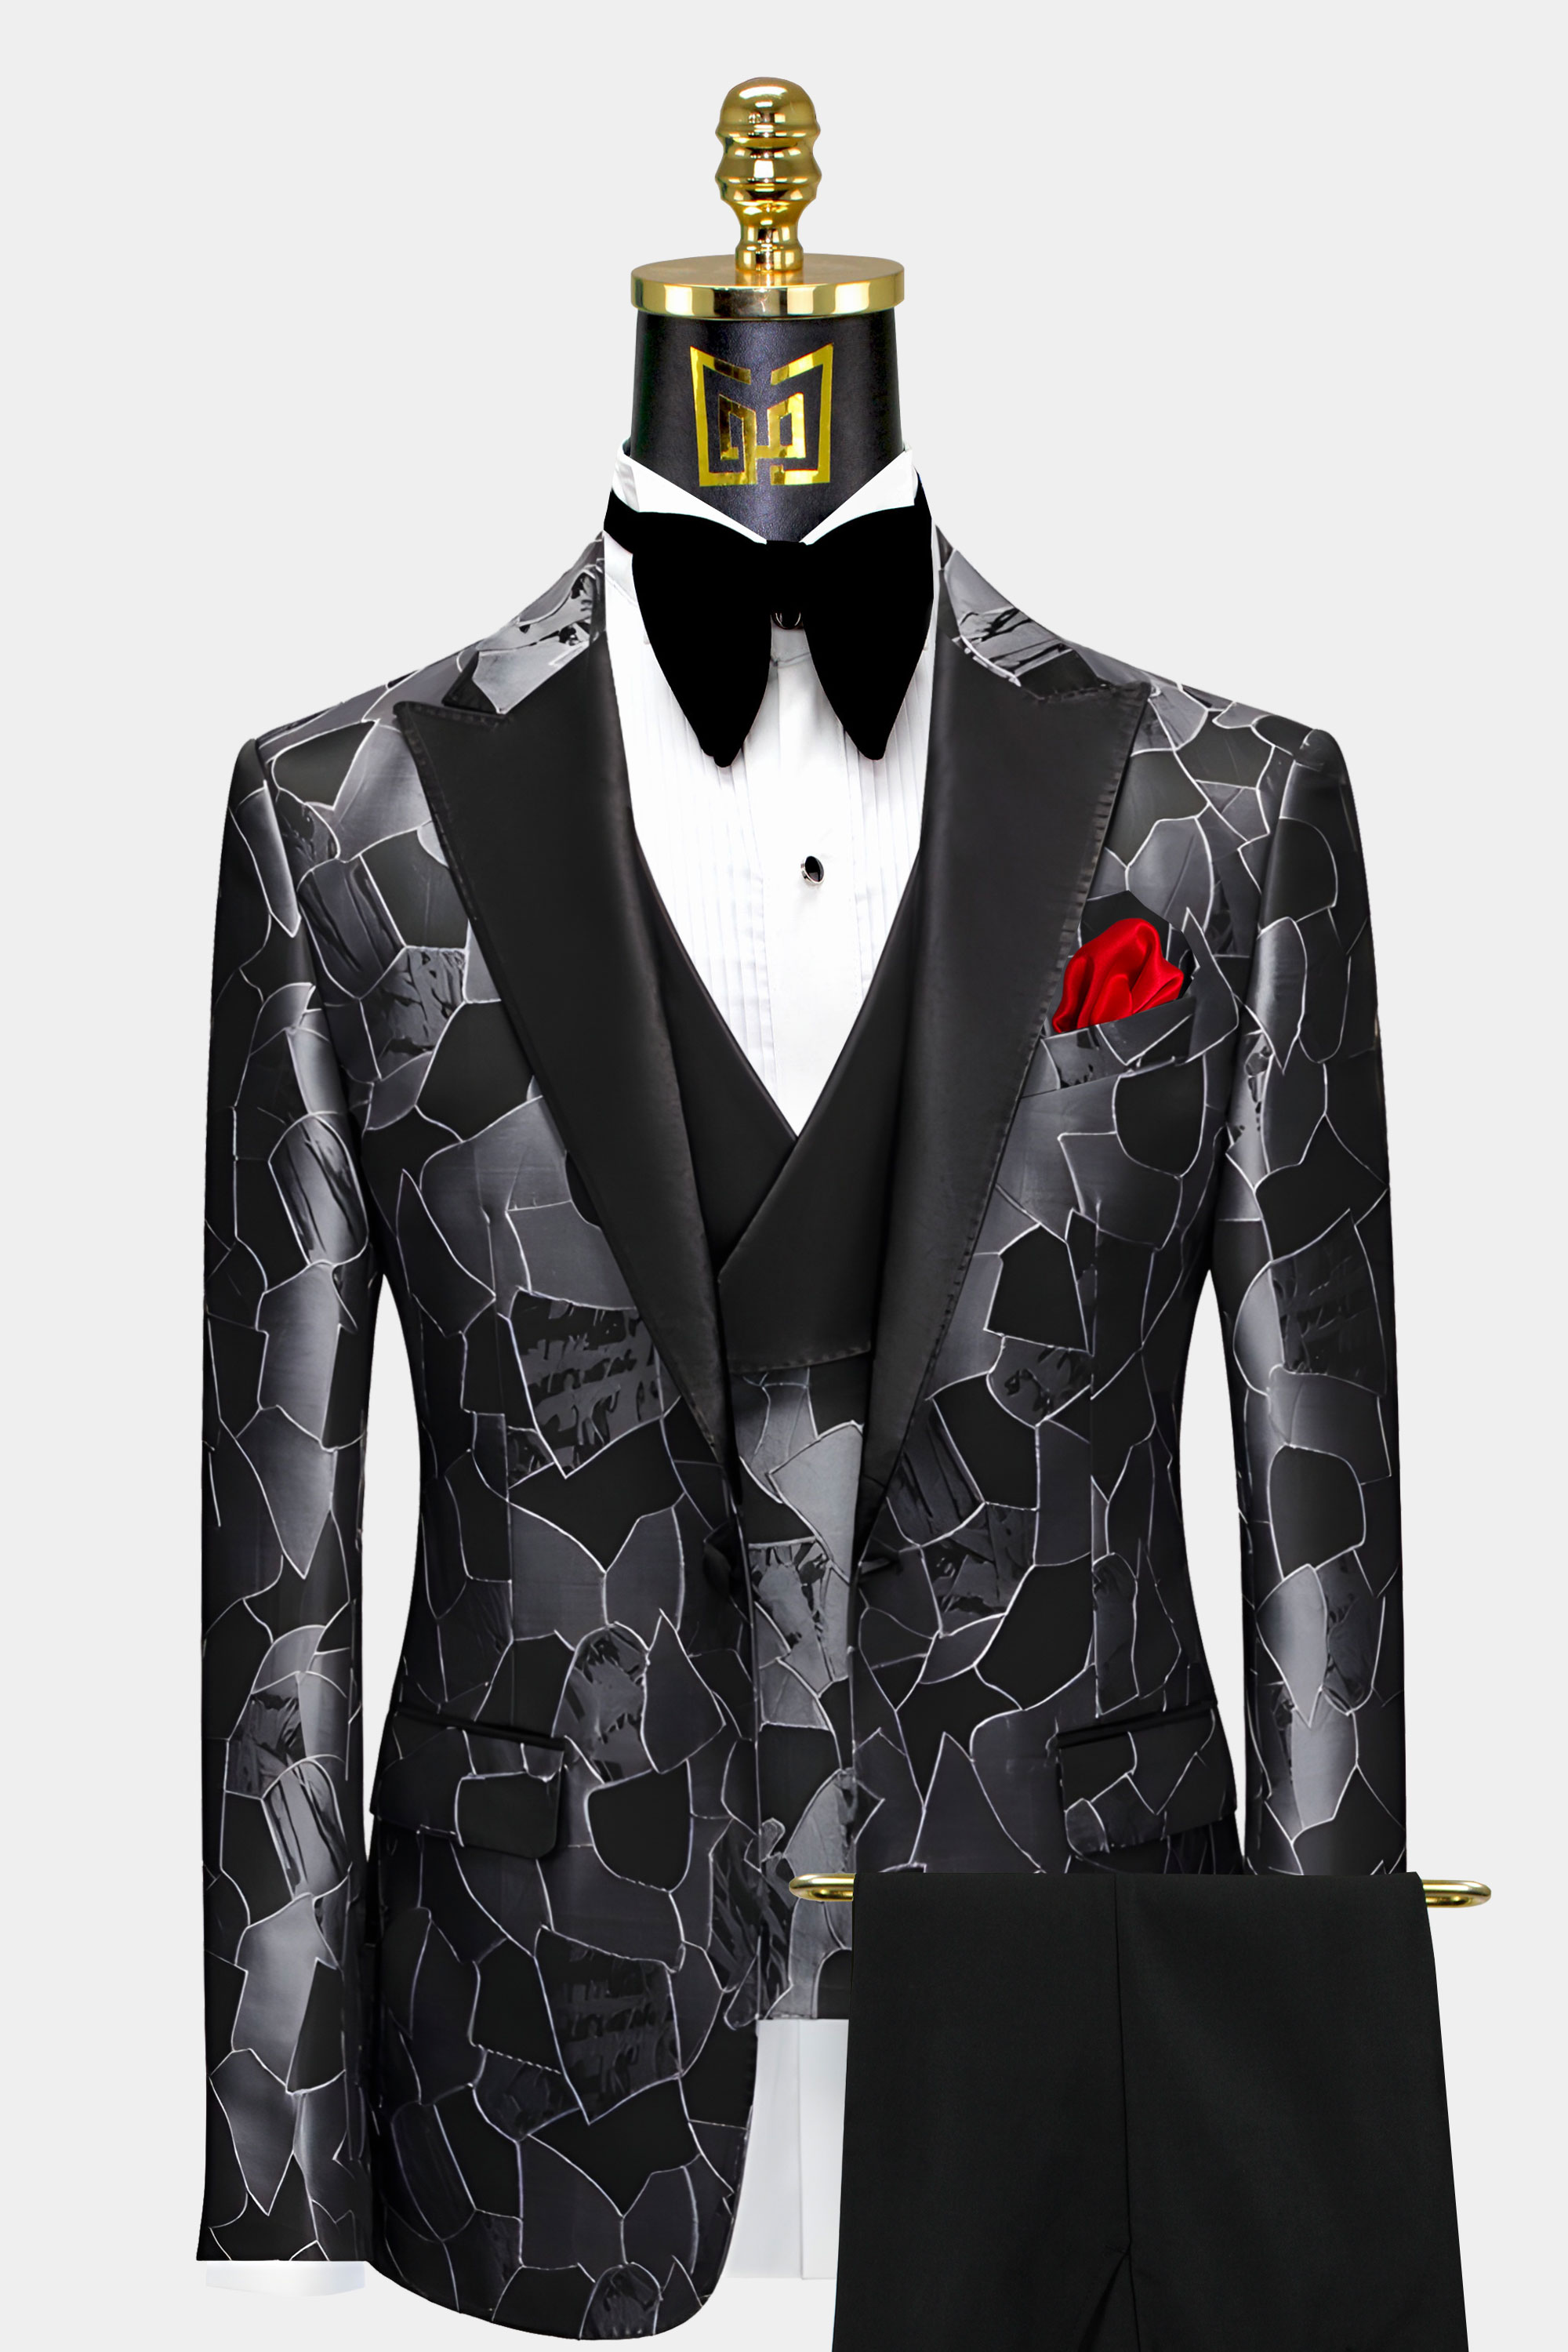 Mens-Grey-and-Black-Tuxedo-Wedding-Groom-Prom-Suit-from-Gentlemansguru.com